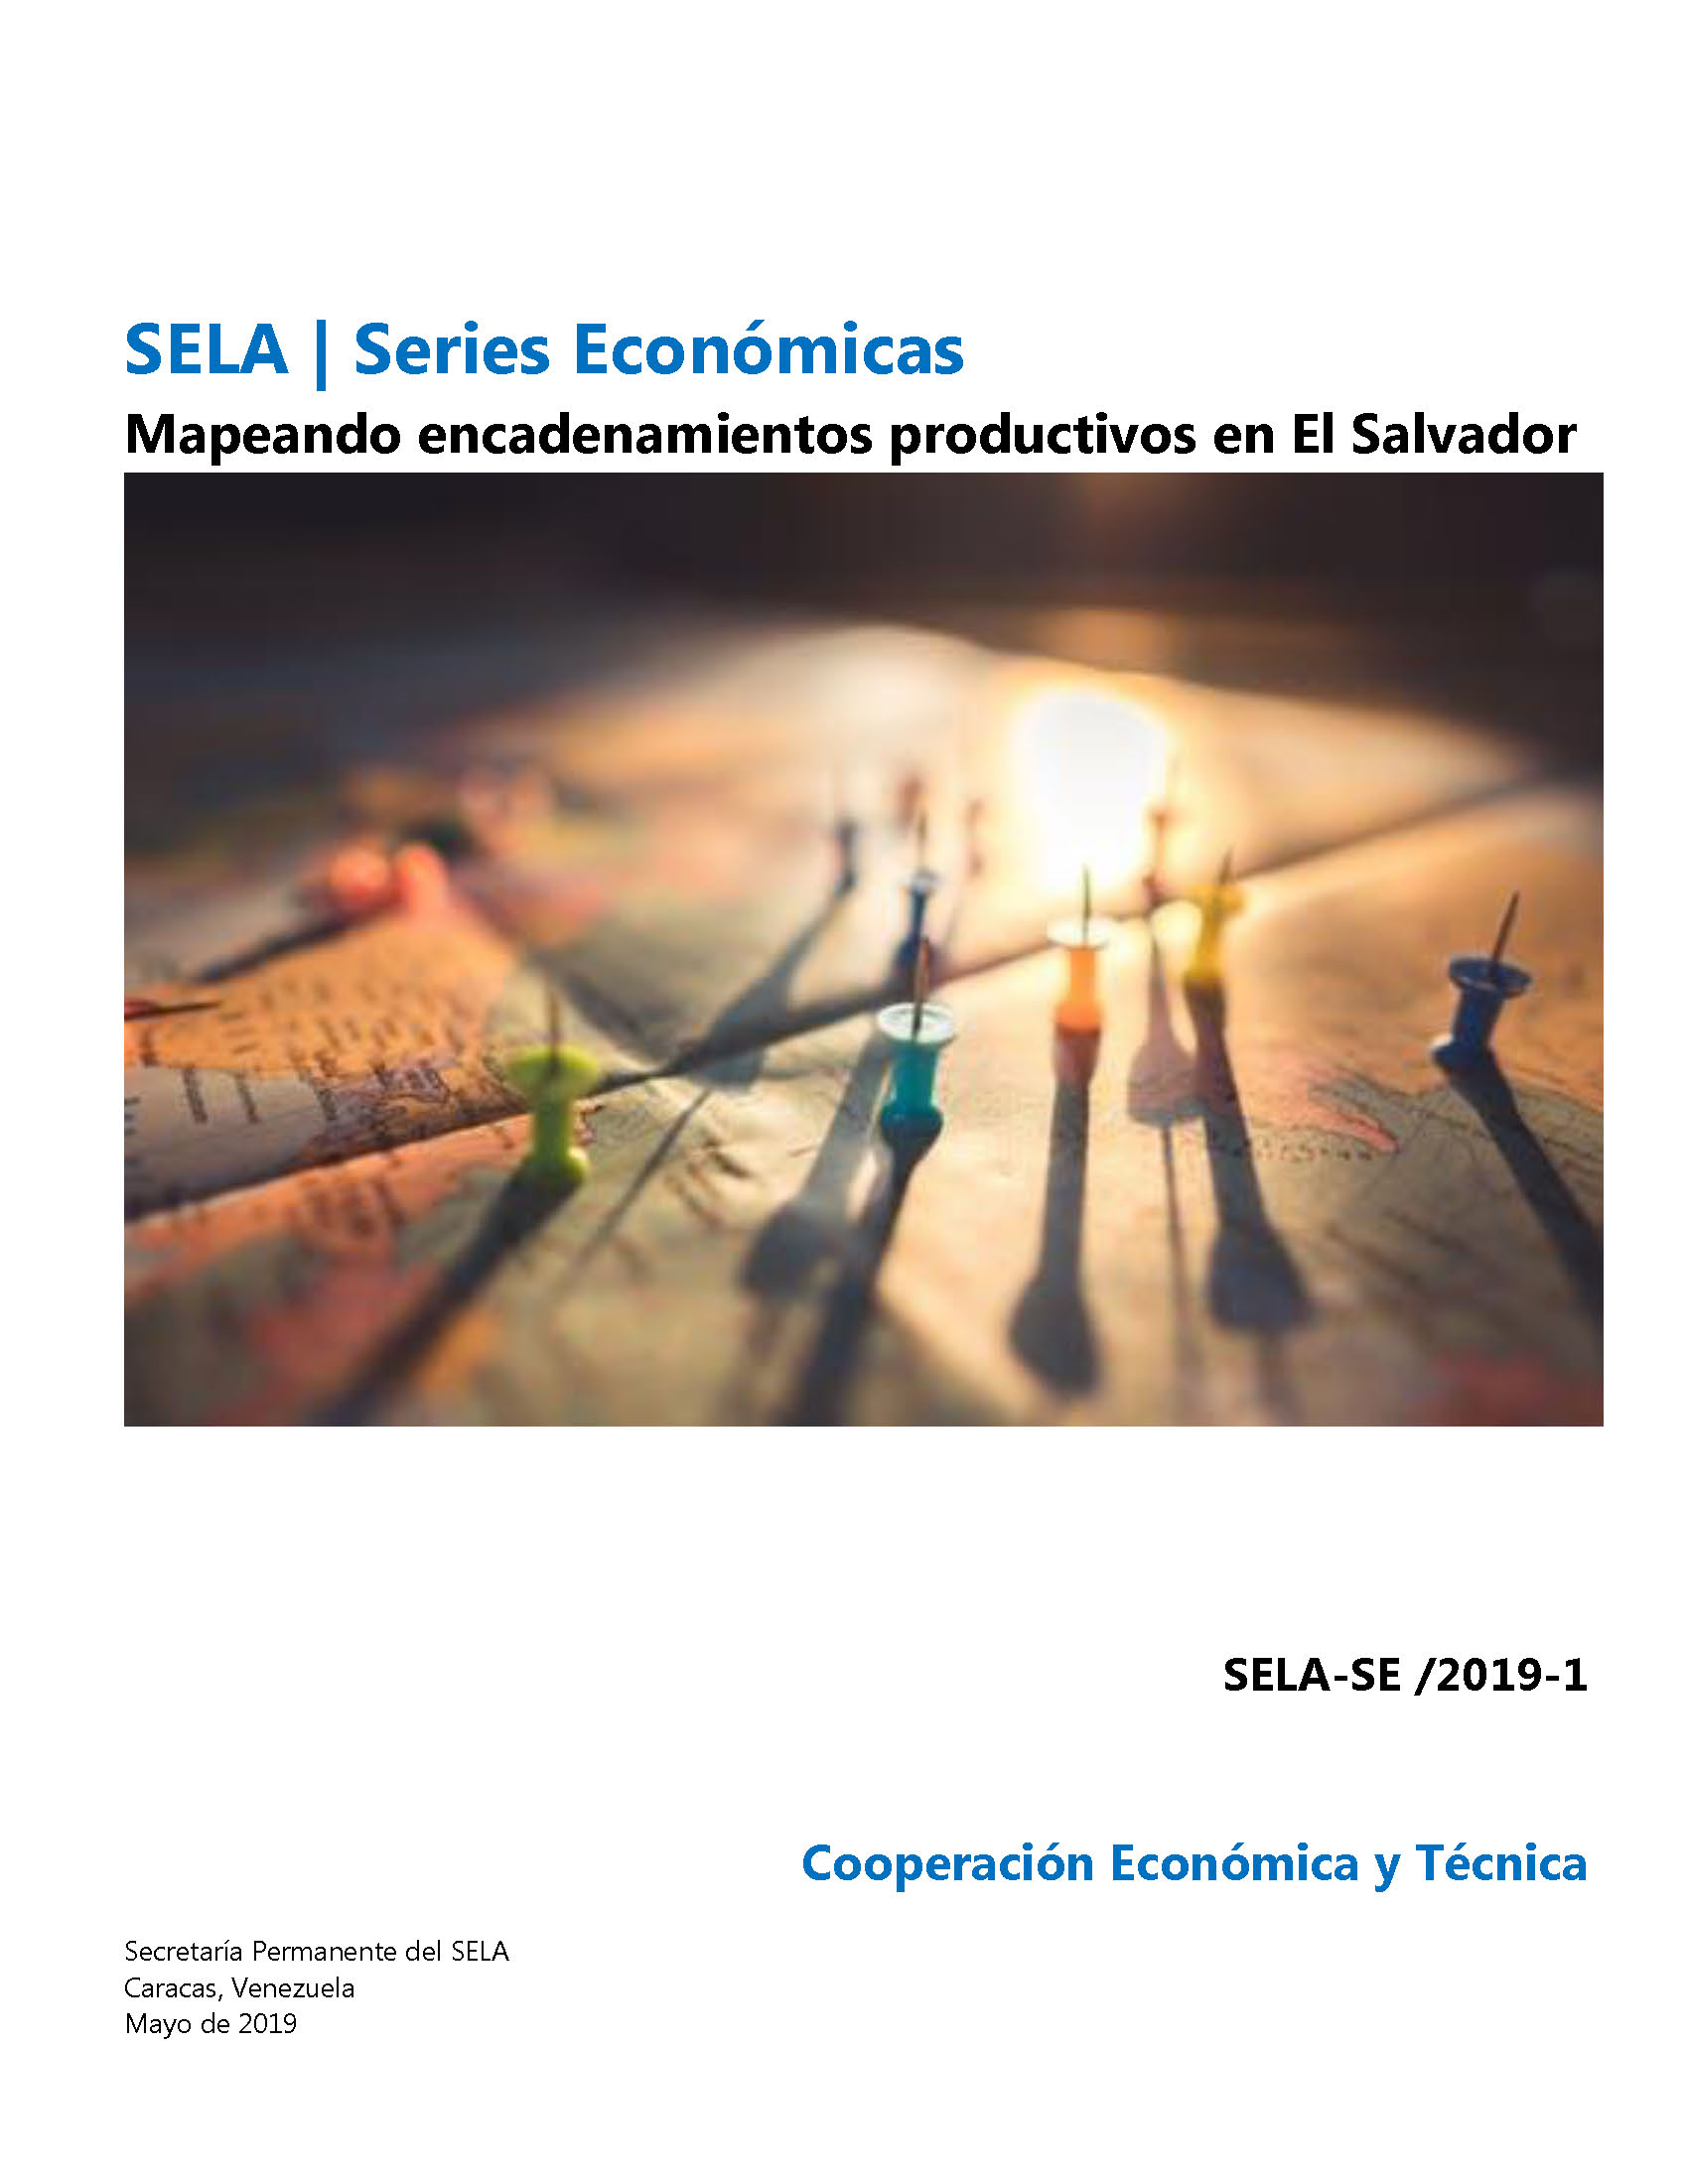 Mapeando encadenamientos productivos en El Salvador. Series Económicas. SELA-SE /2019-1